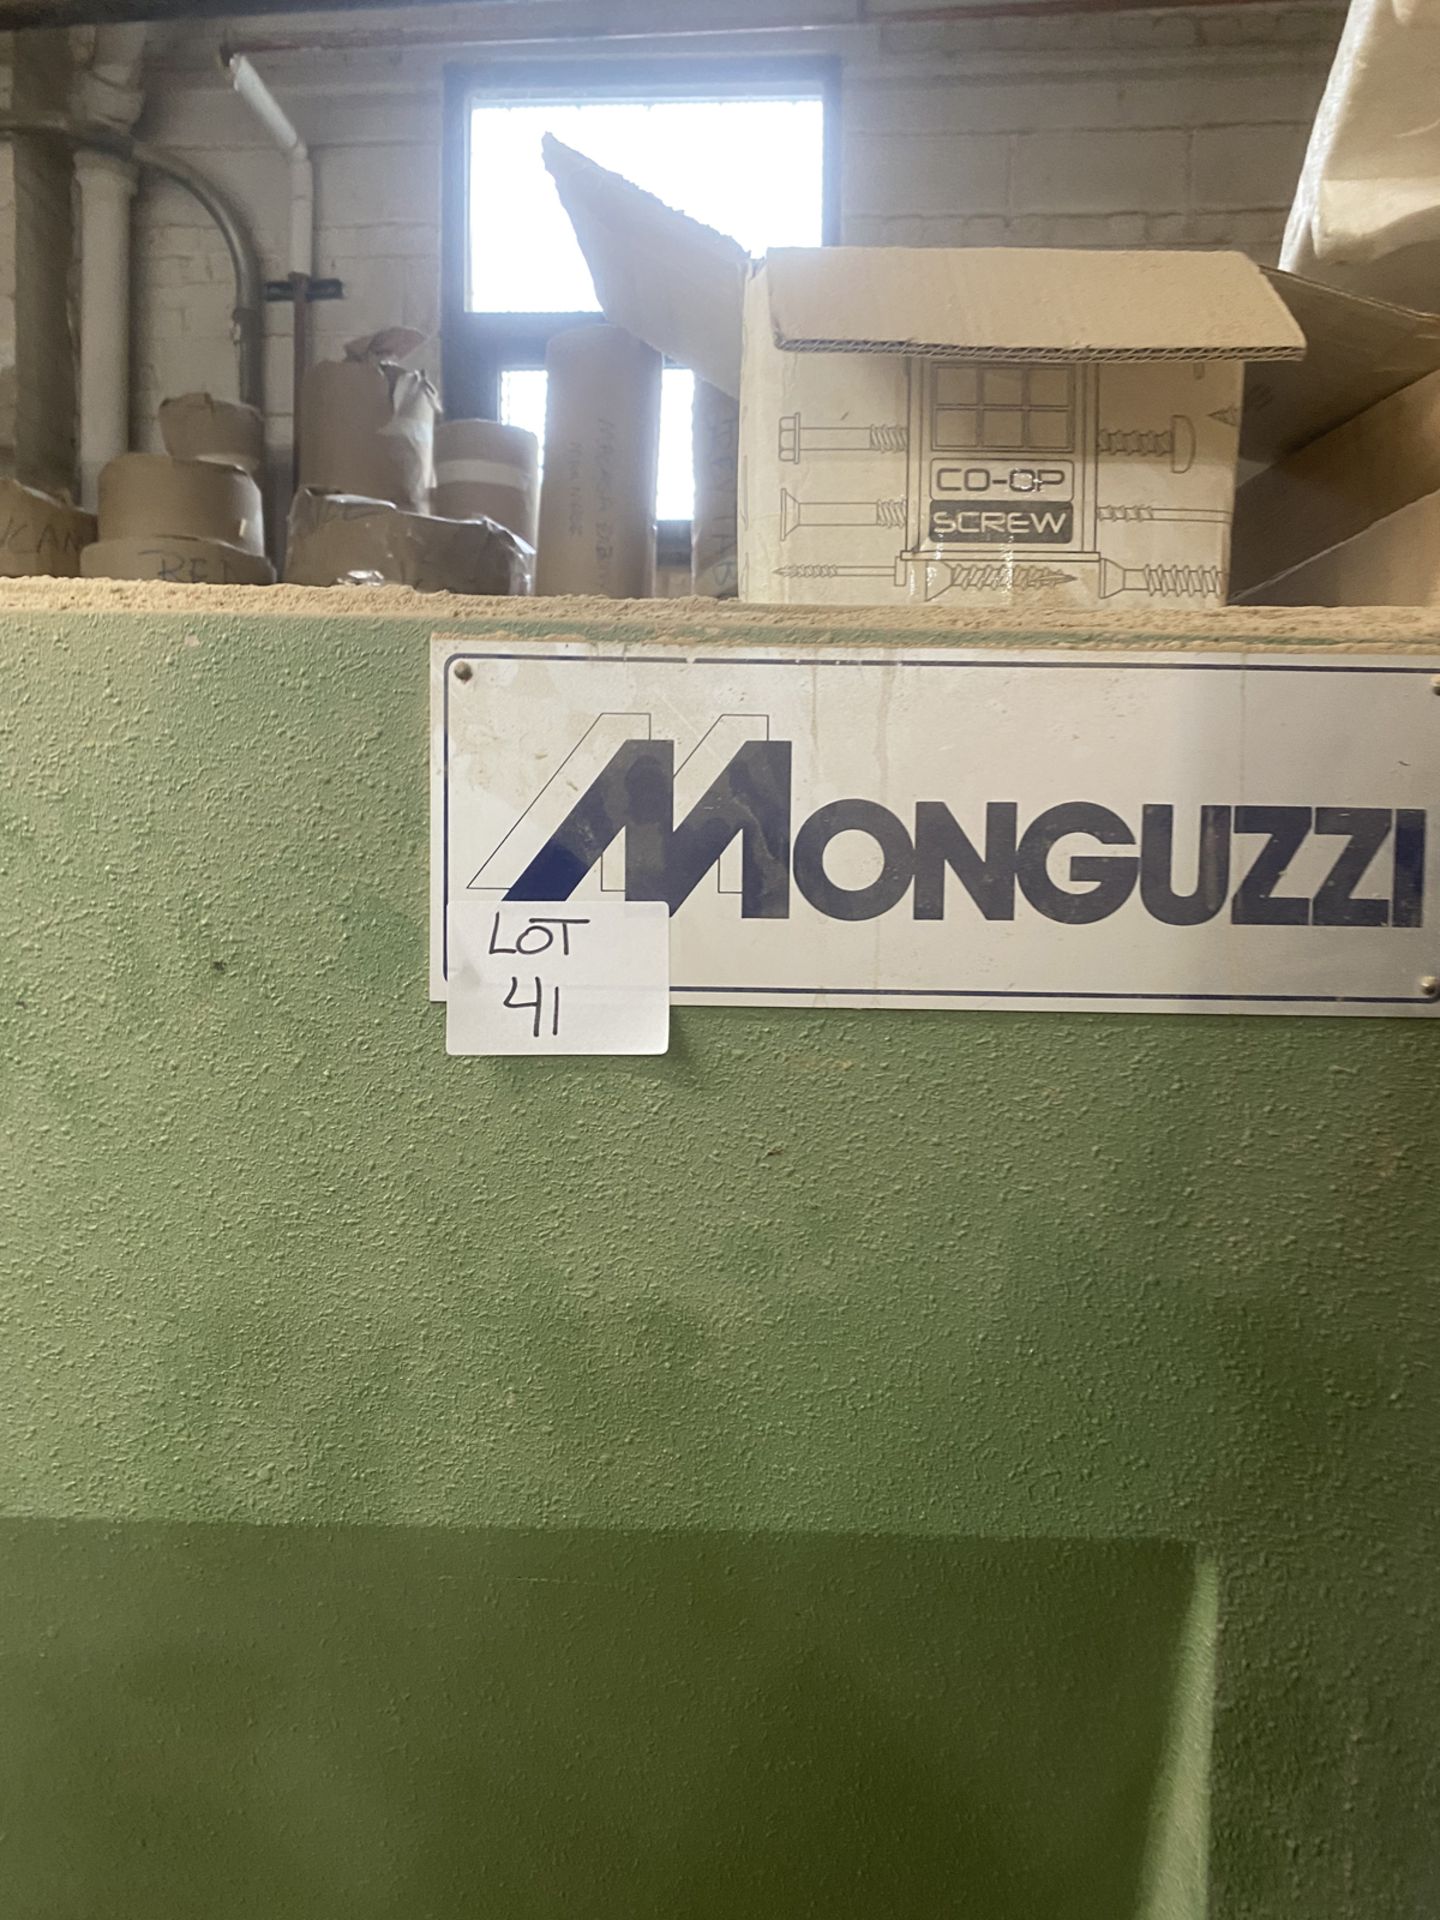 Monguzzi 161" Guillotine - Bild 6 aus 7